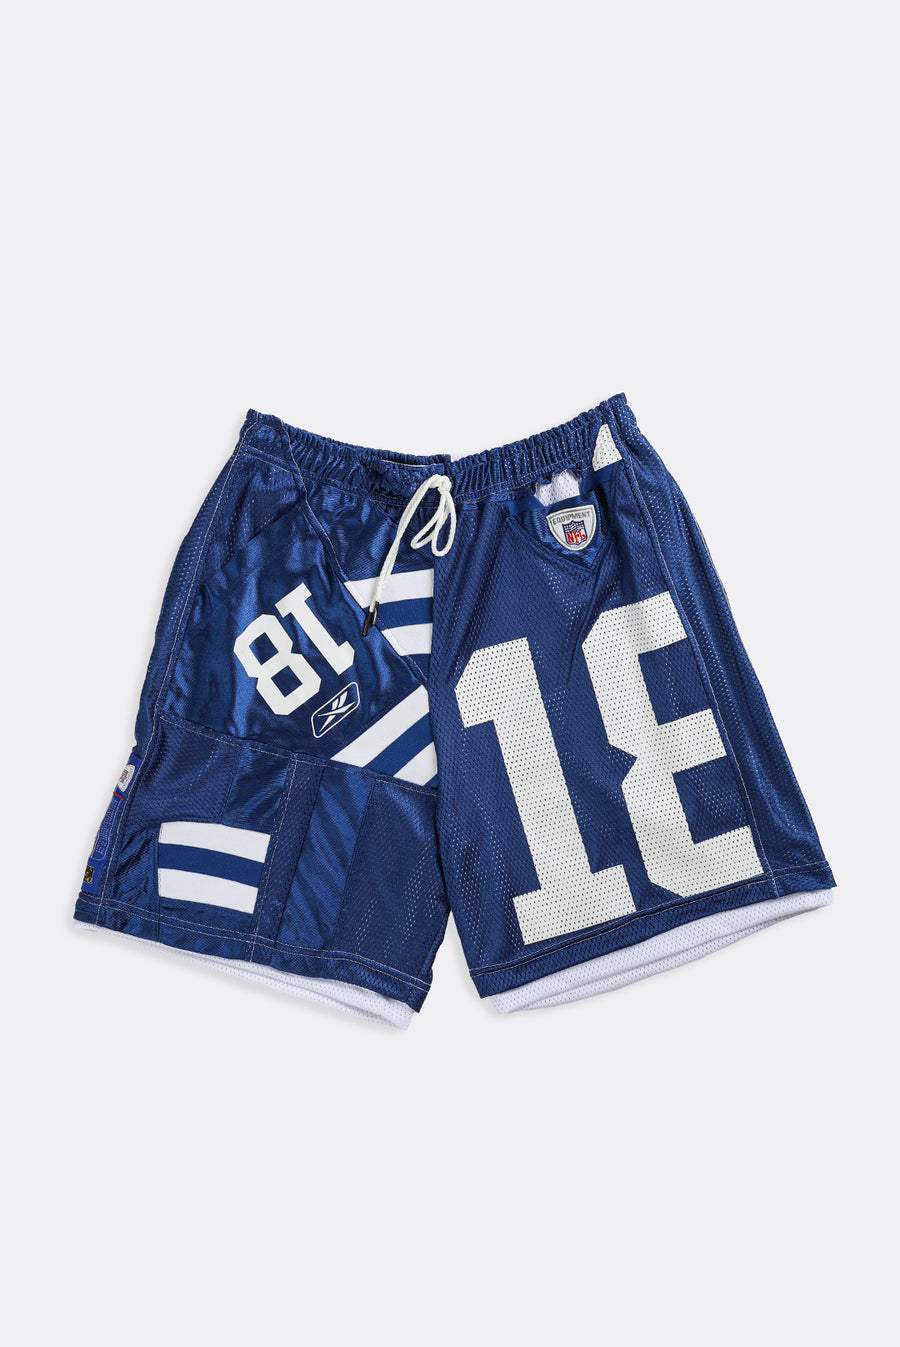 Unisex Rework Colts NFL Jersey Shorts - Women-L, Men-M